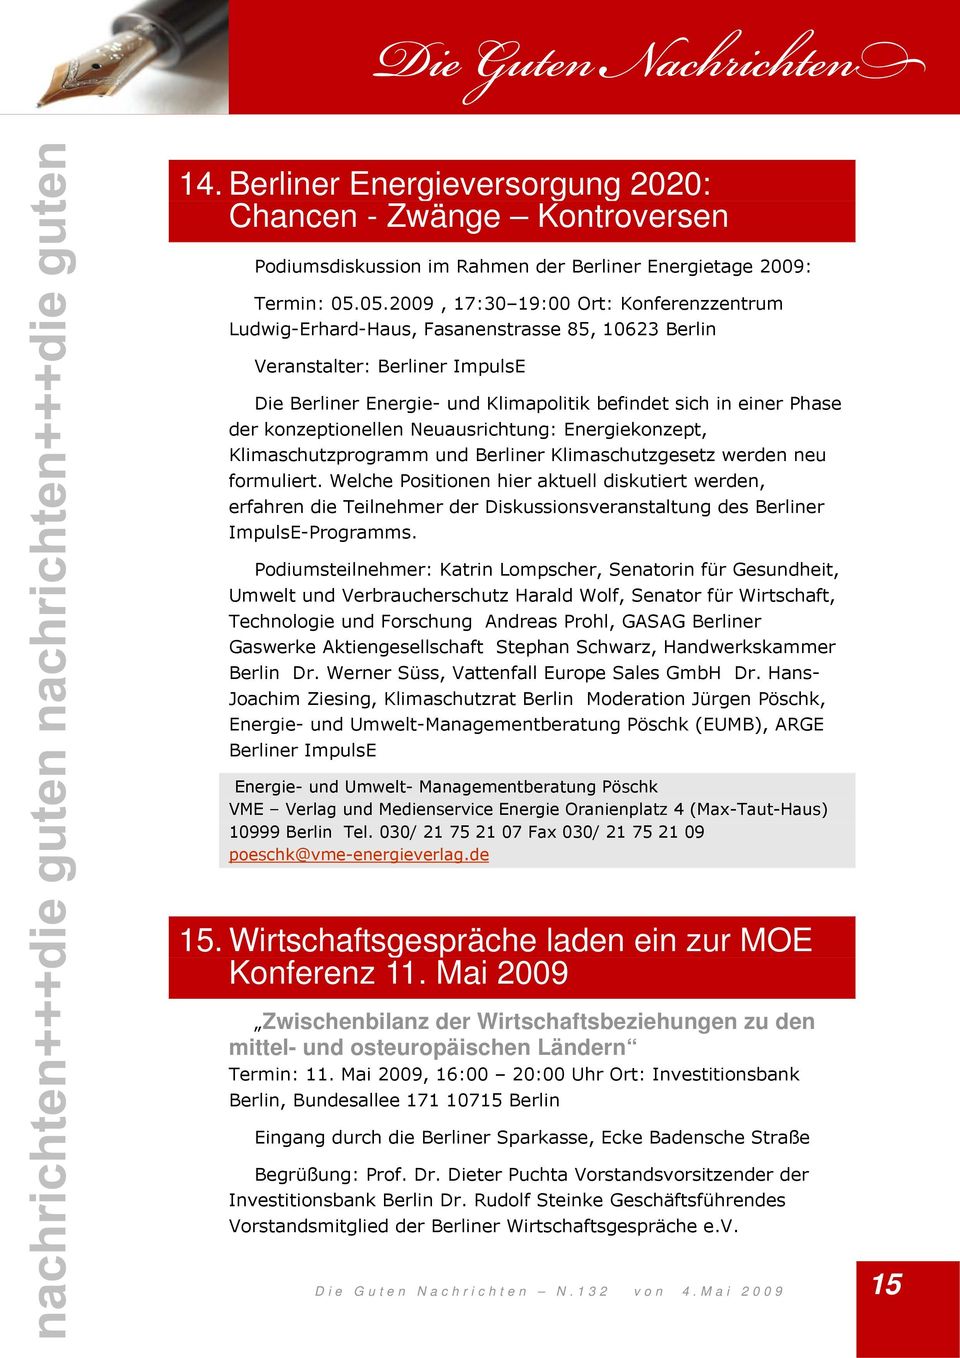 konzeptionellen Neuausrichtung: Energiekonzept, Klimaschutzprogramm und Berliner Klimaschutzgesetz werden neu formuliert.